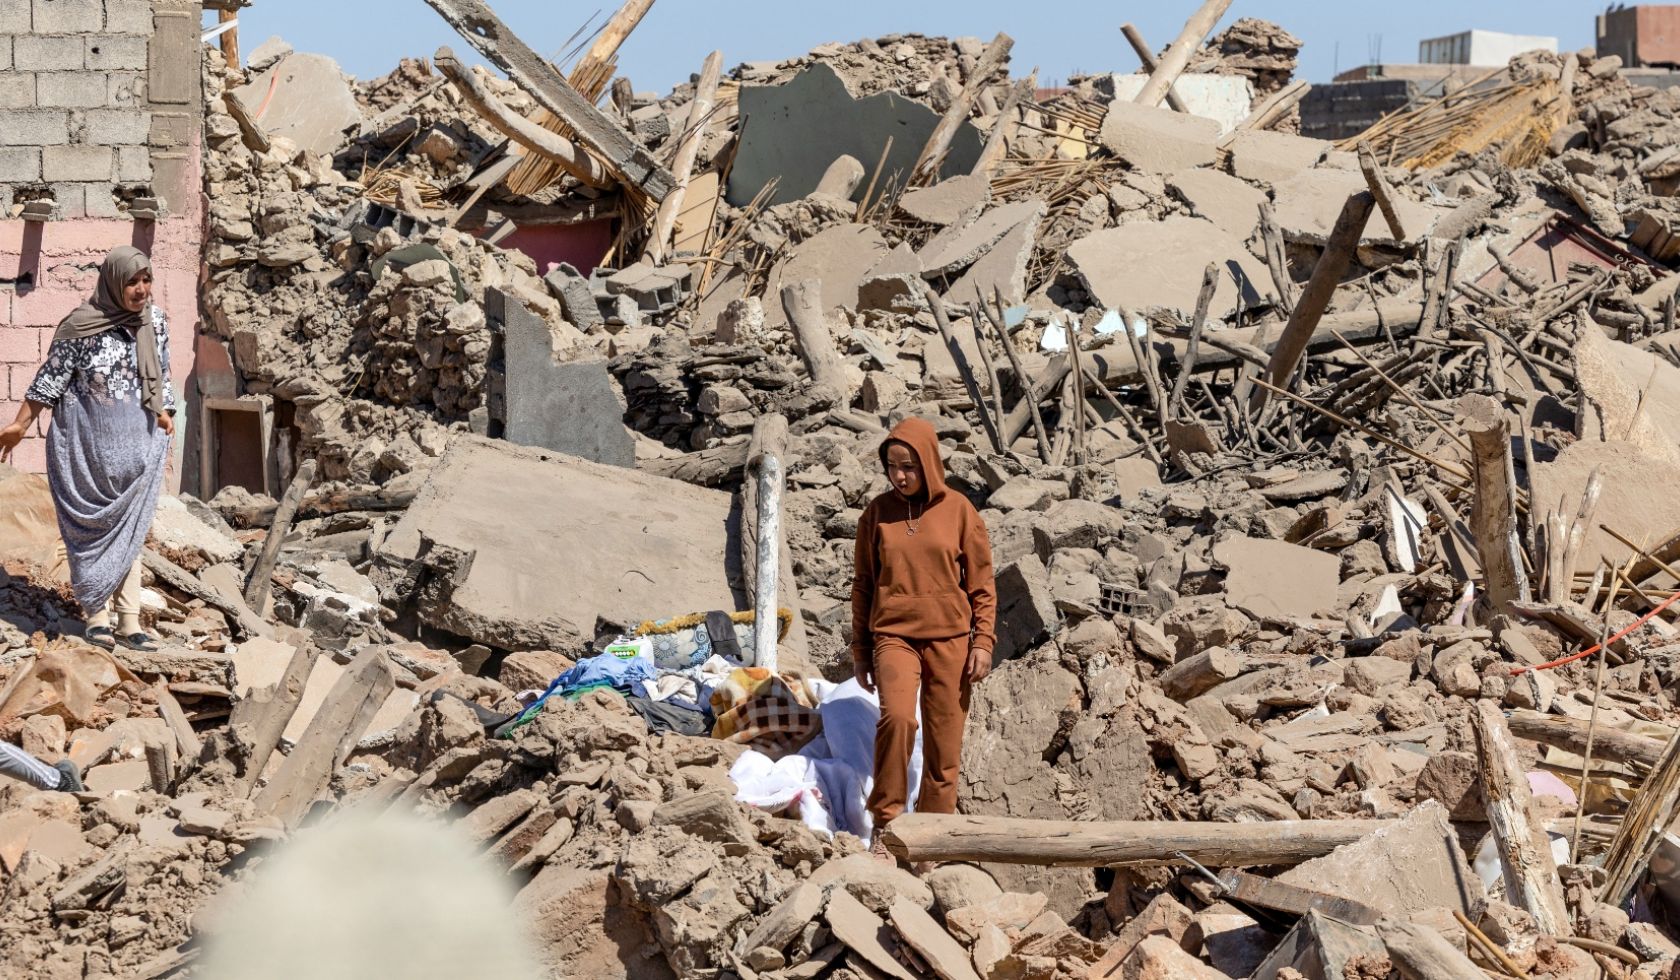 Le Japon s’associe à l’UNESCO pour renforcer la prévention des risques sismiques au Maroc